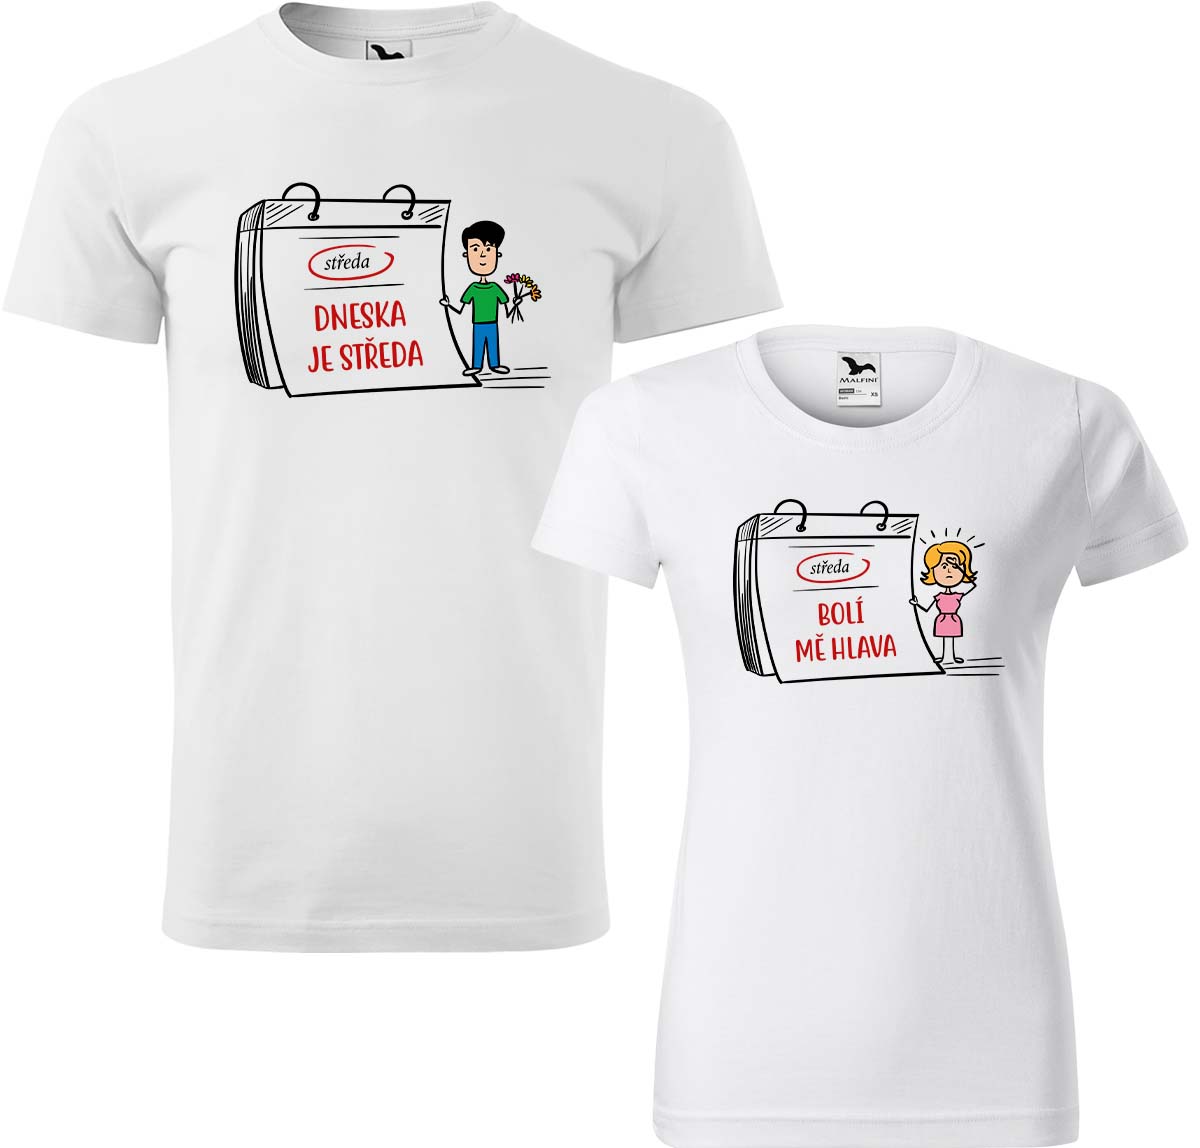 Trička pro páry - Dneska je středa Barva: Bílá (00), Velikost dámské tričko: L, Velikost pánské tričko: XL